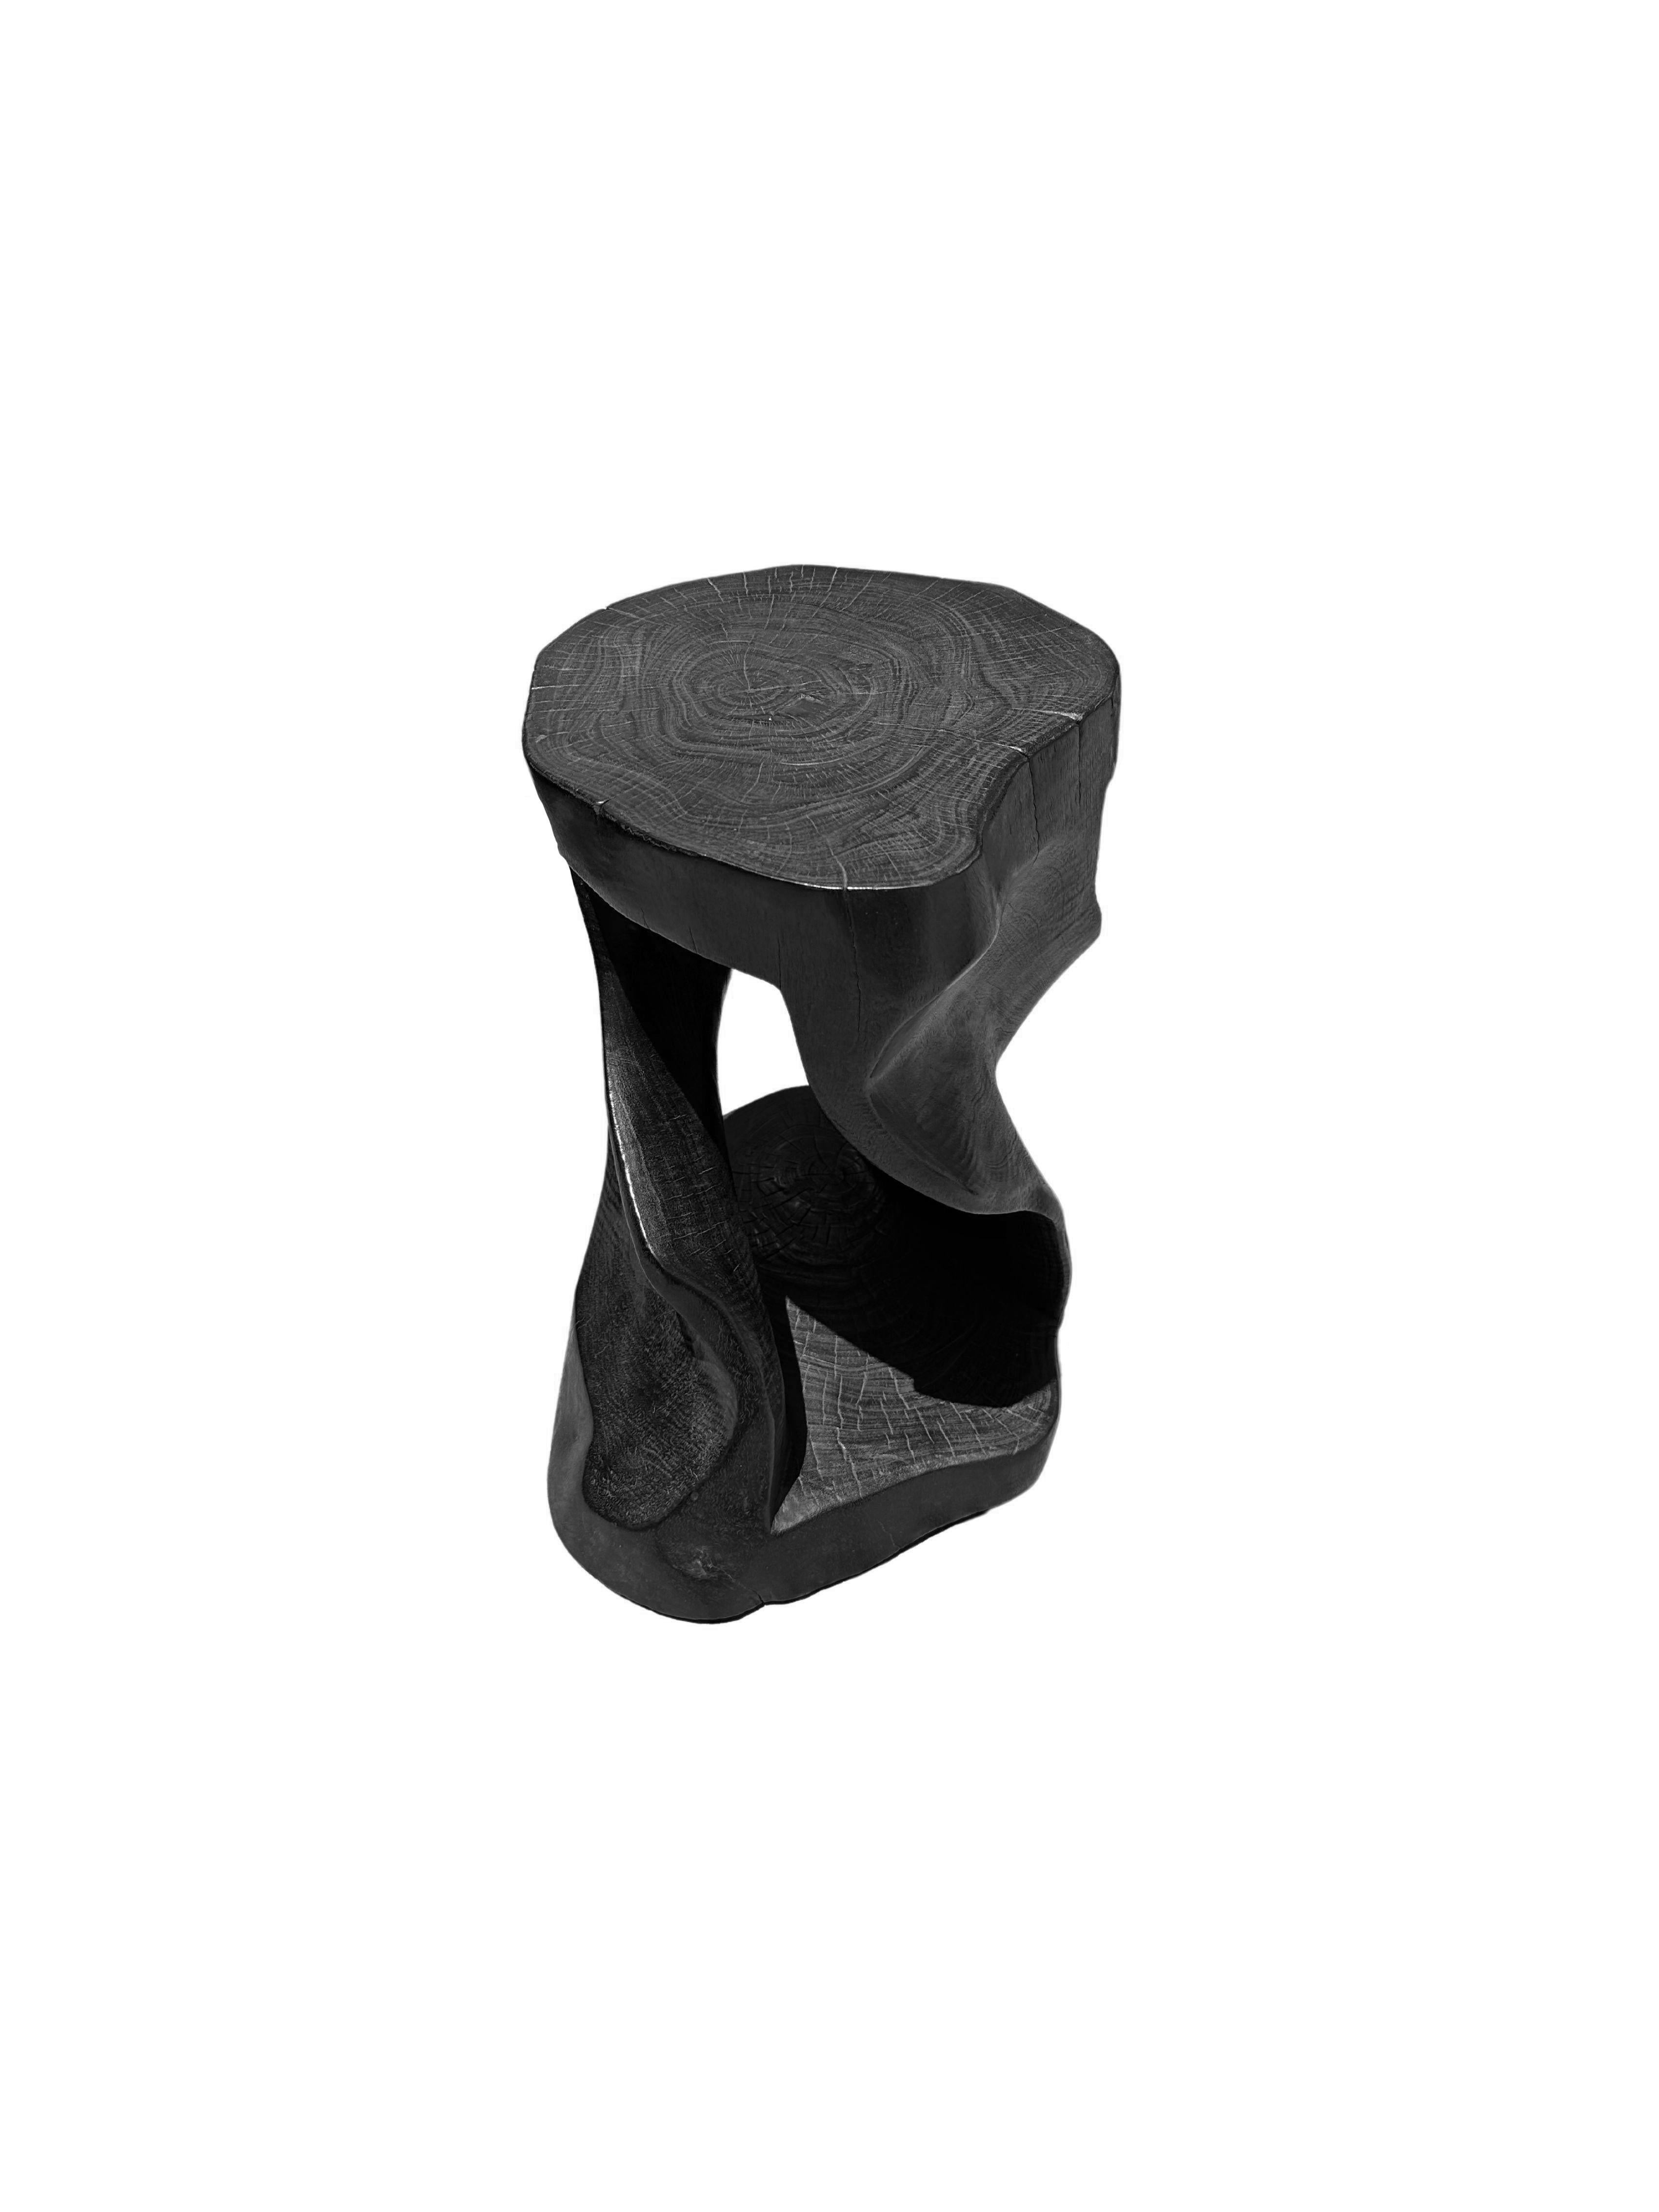 Ein wunderbar skulpturaler Hocker oder Beistelltisch, mit einer Mischung aus Holzstrukturen und -tönen. Es hat ein spiralförmiges Design mit einem freiliegenden Kern. Dieser einzigartig skulpturale und vielseitige Stuhl wurde aus einem einzigen